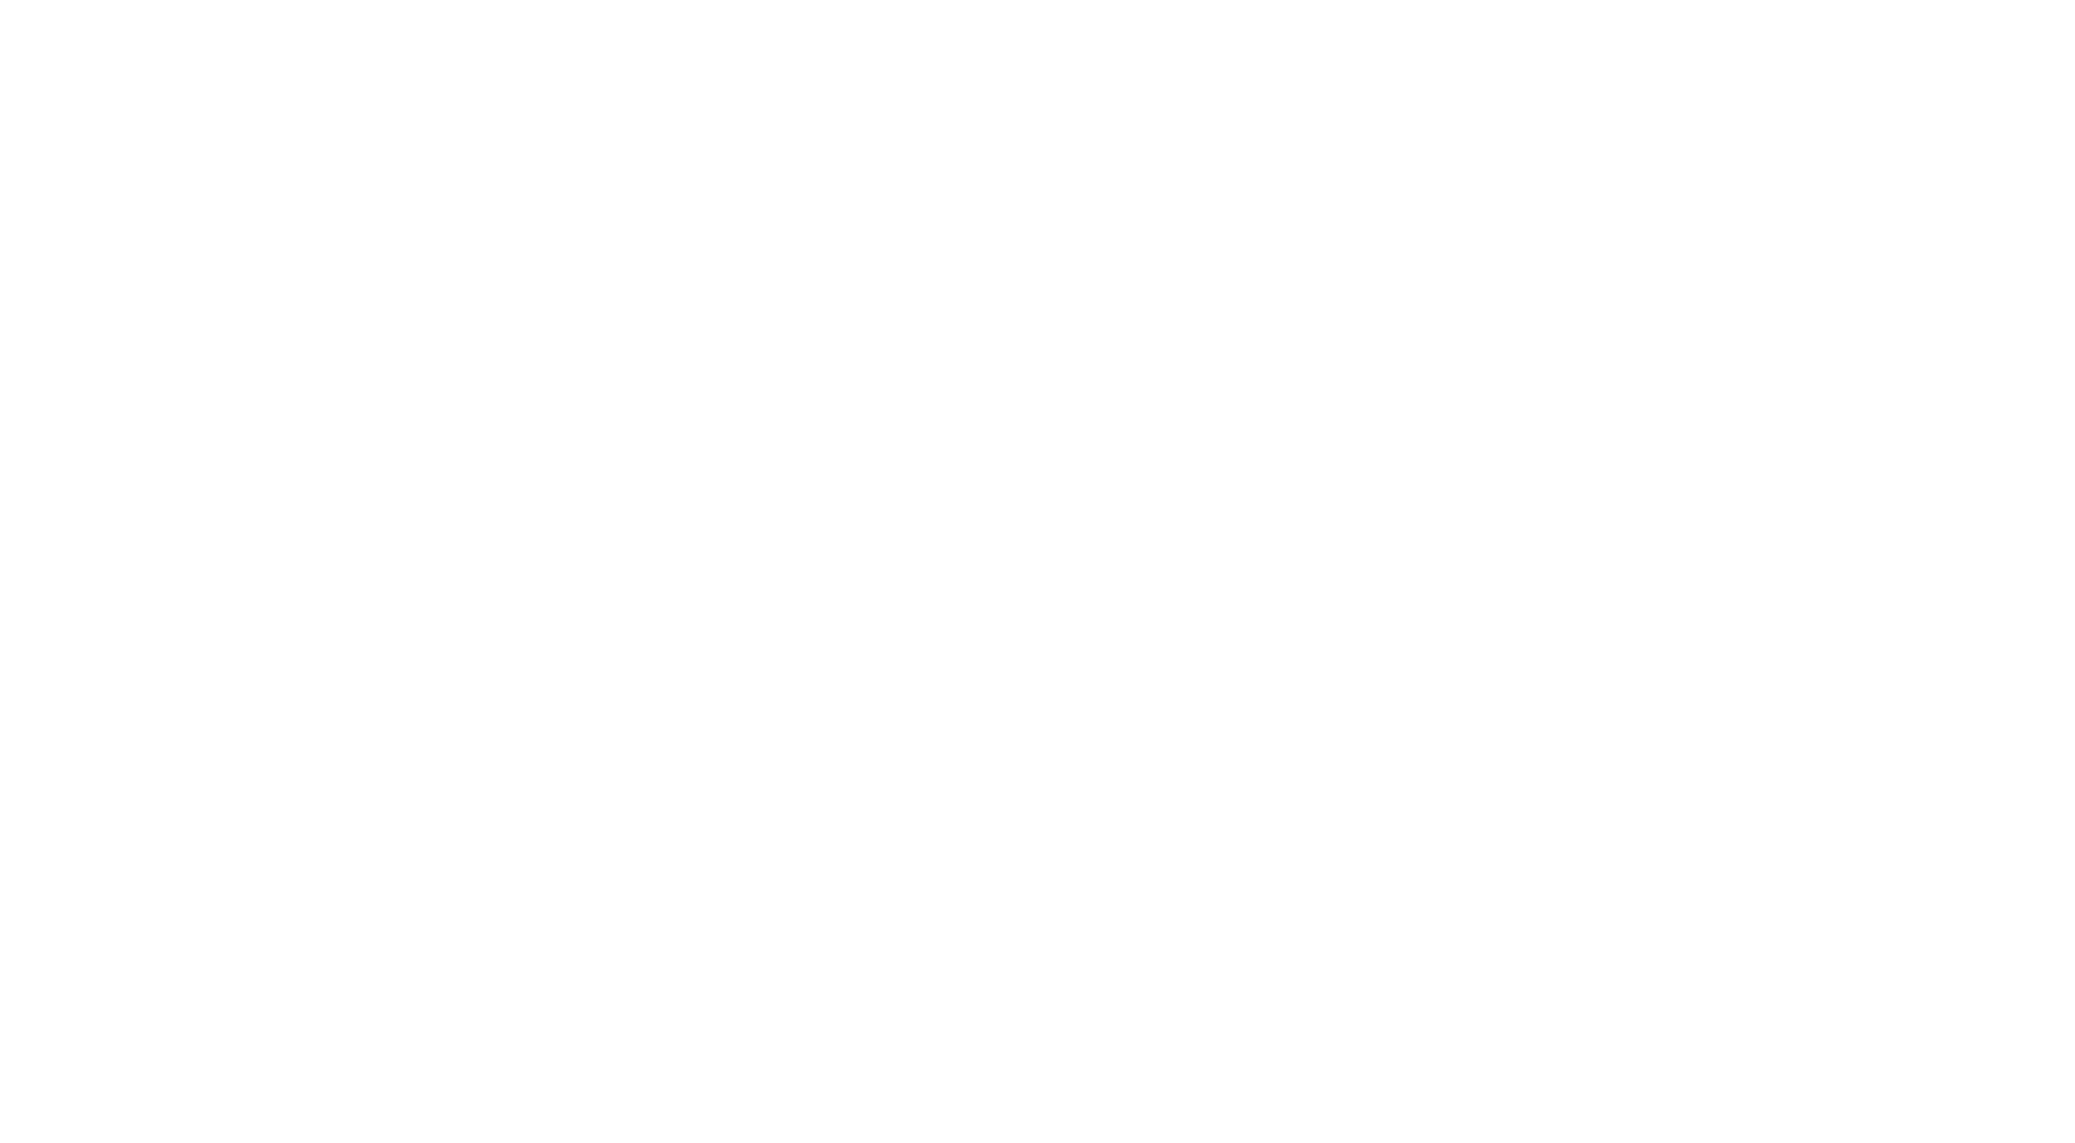 trilenium casino